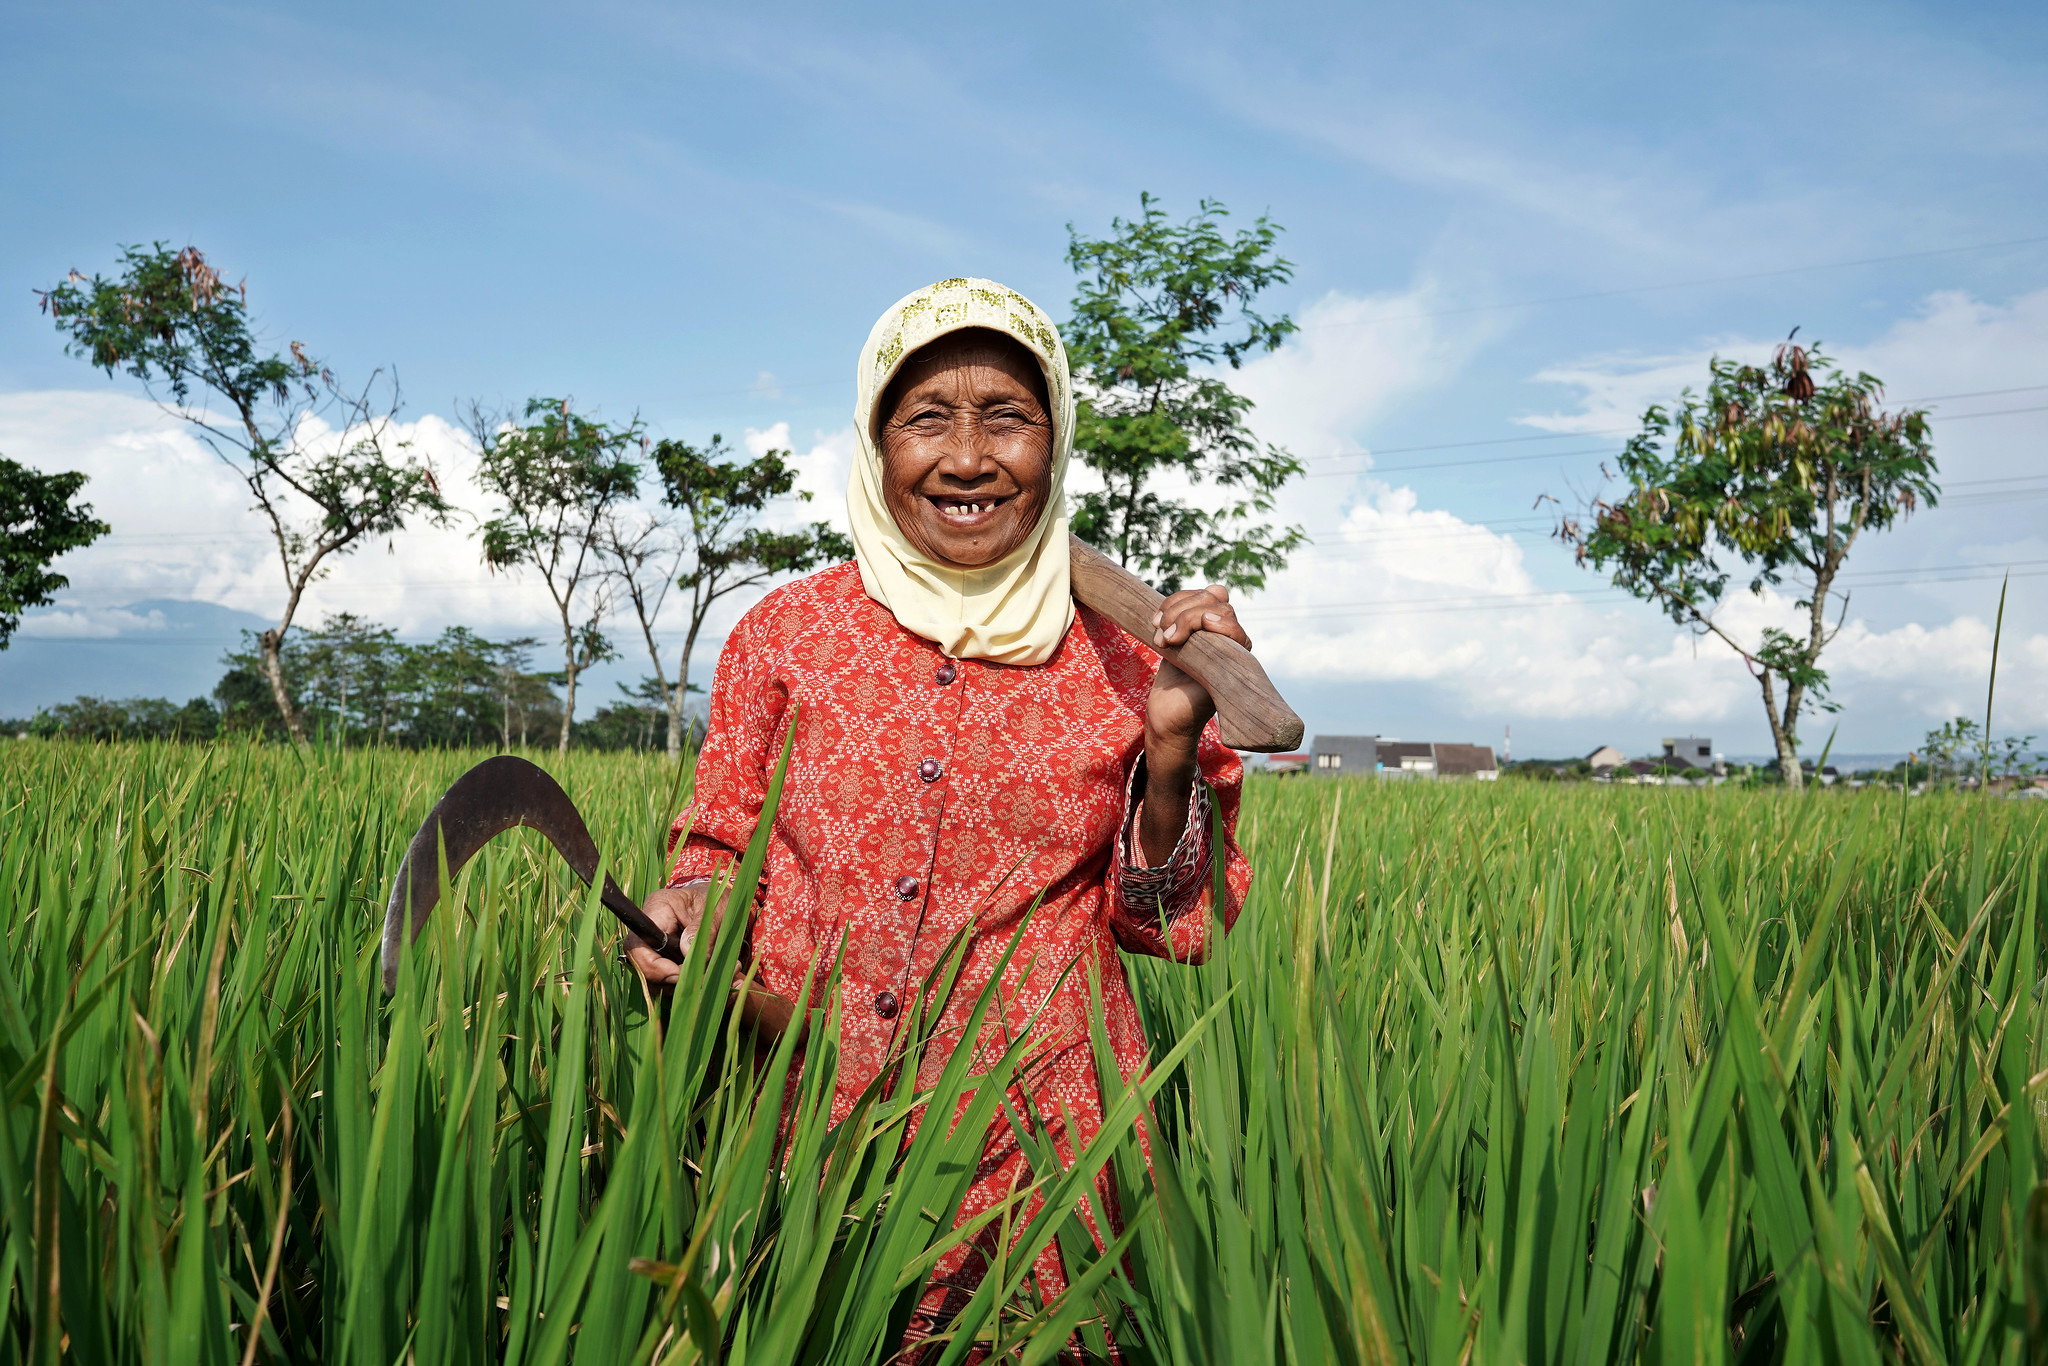 Potret petani padi perempuan